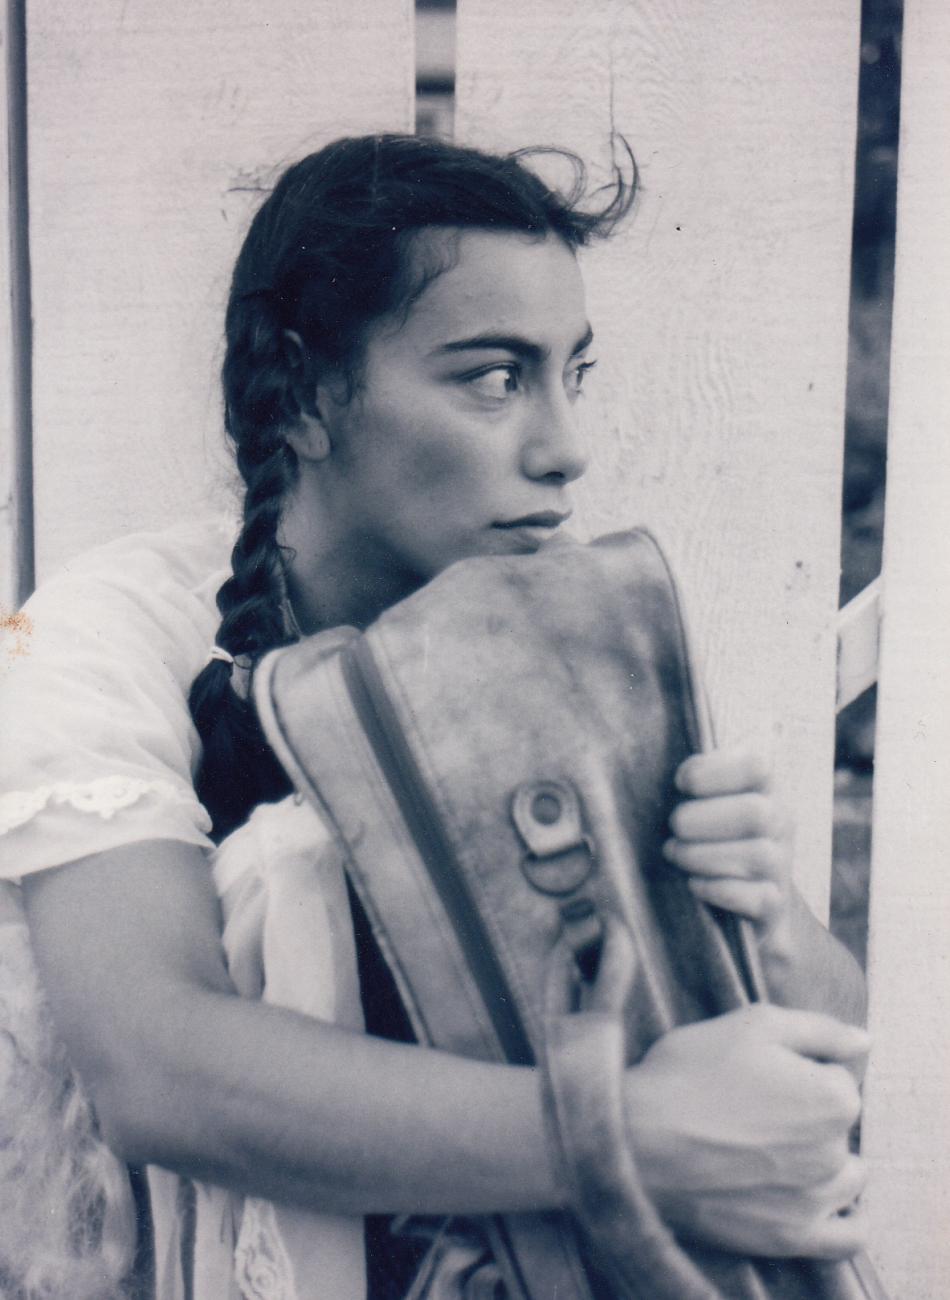 Carmen Aguirre avec des tresses, assise et serrant une valise dans ses bras.